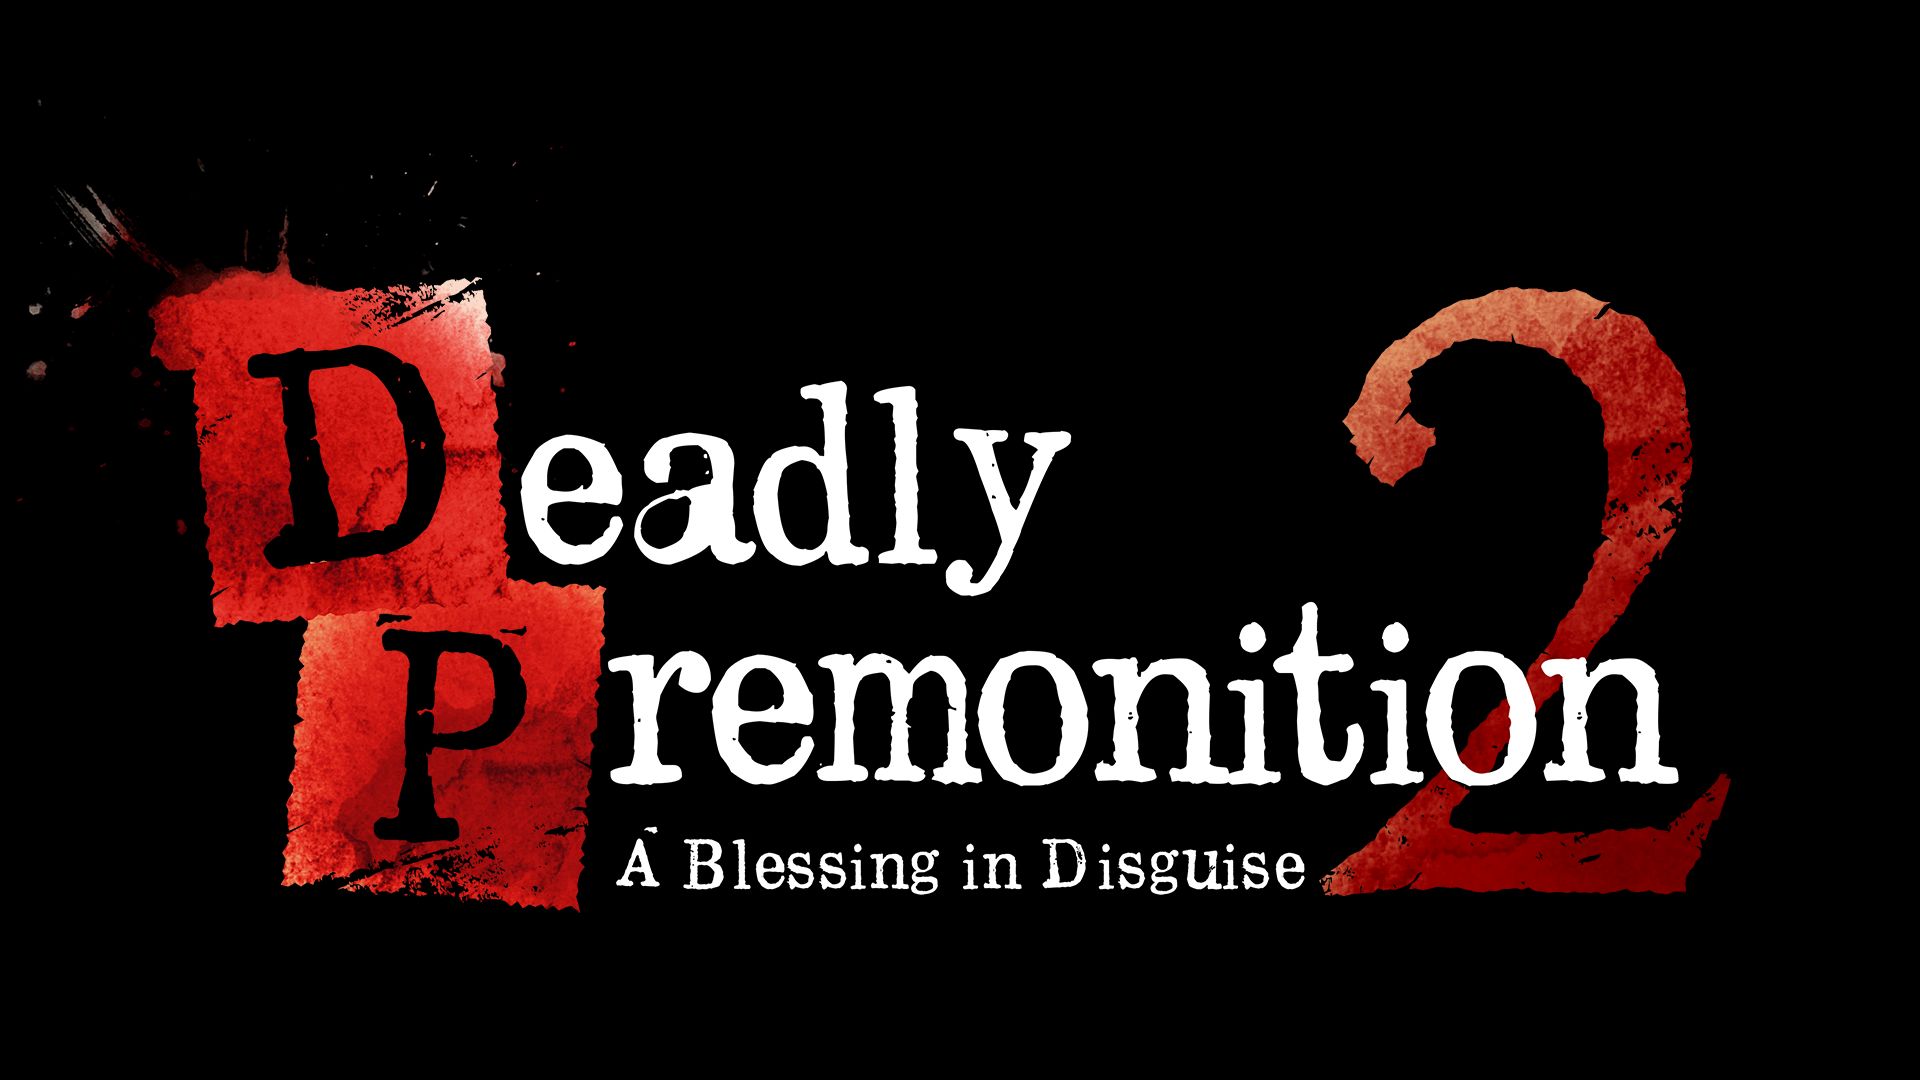 Deadly Premonition 2 stiže u srpnju